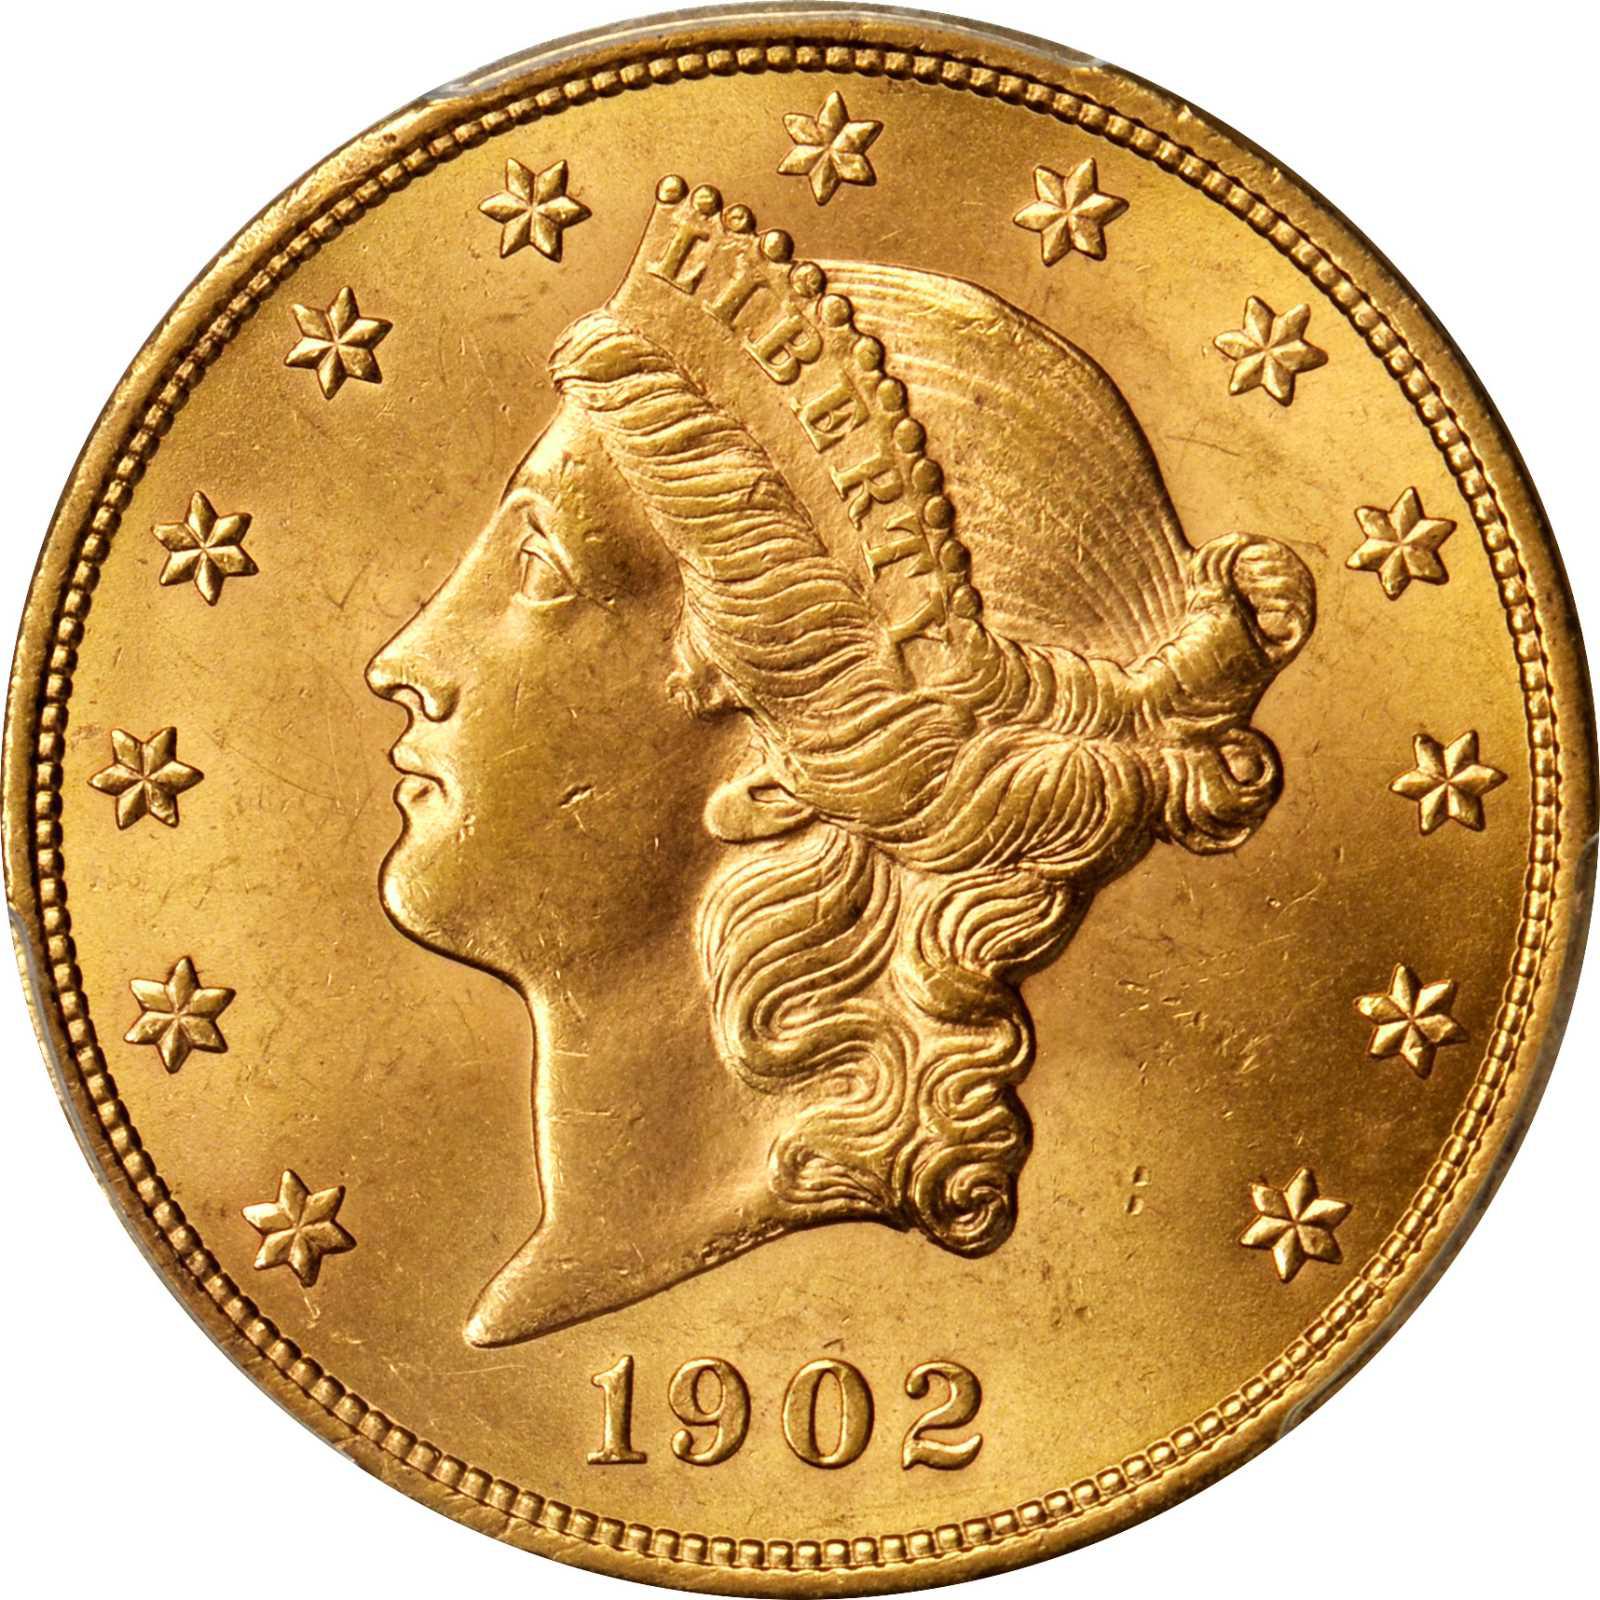 gold dollar coins worth money